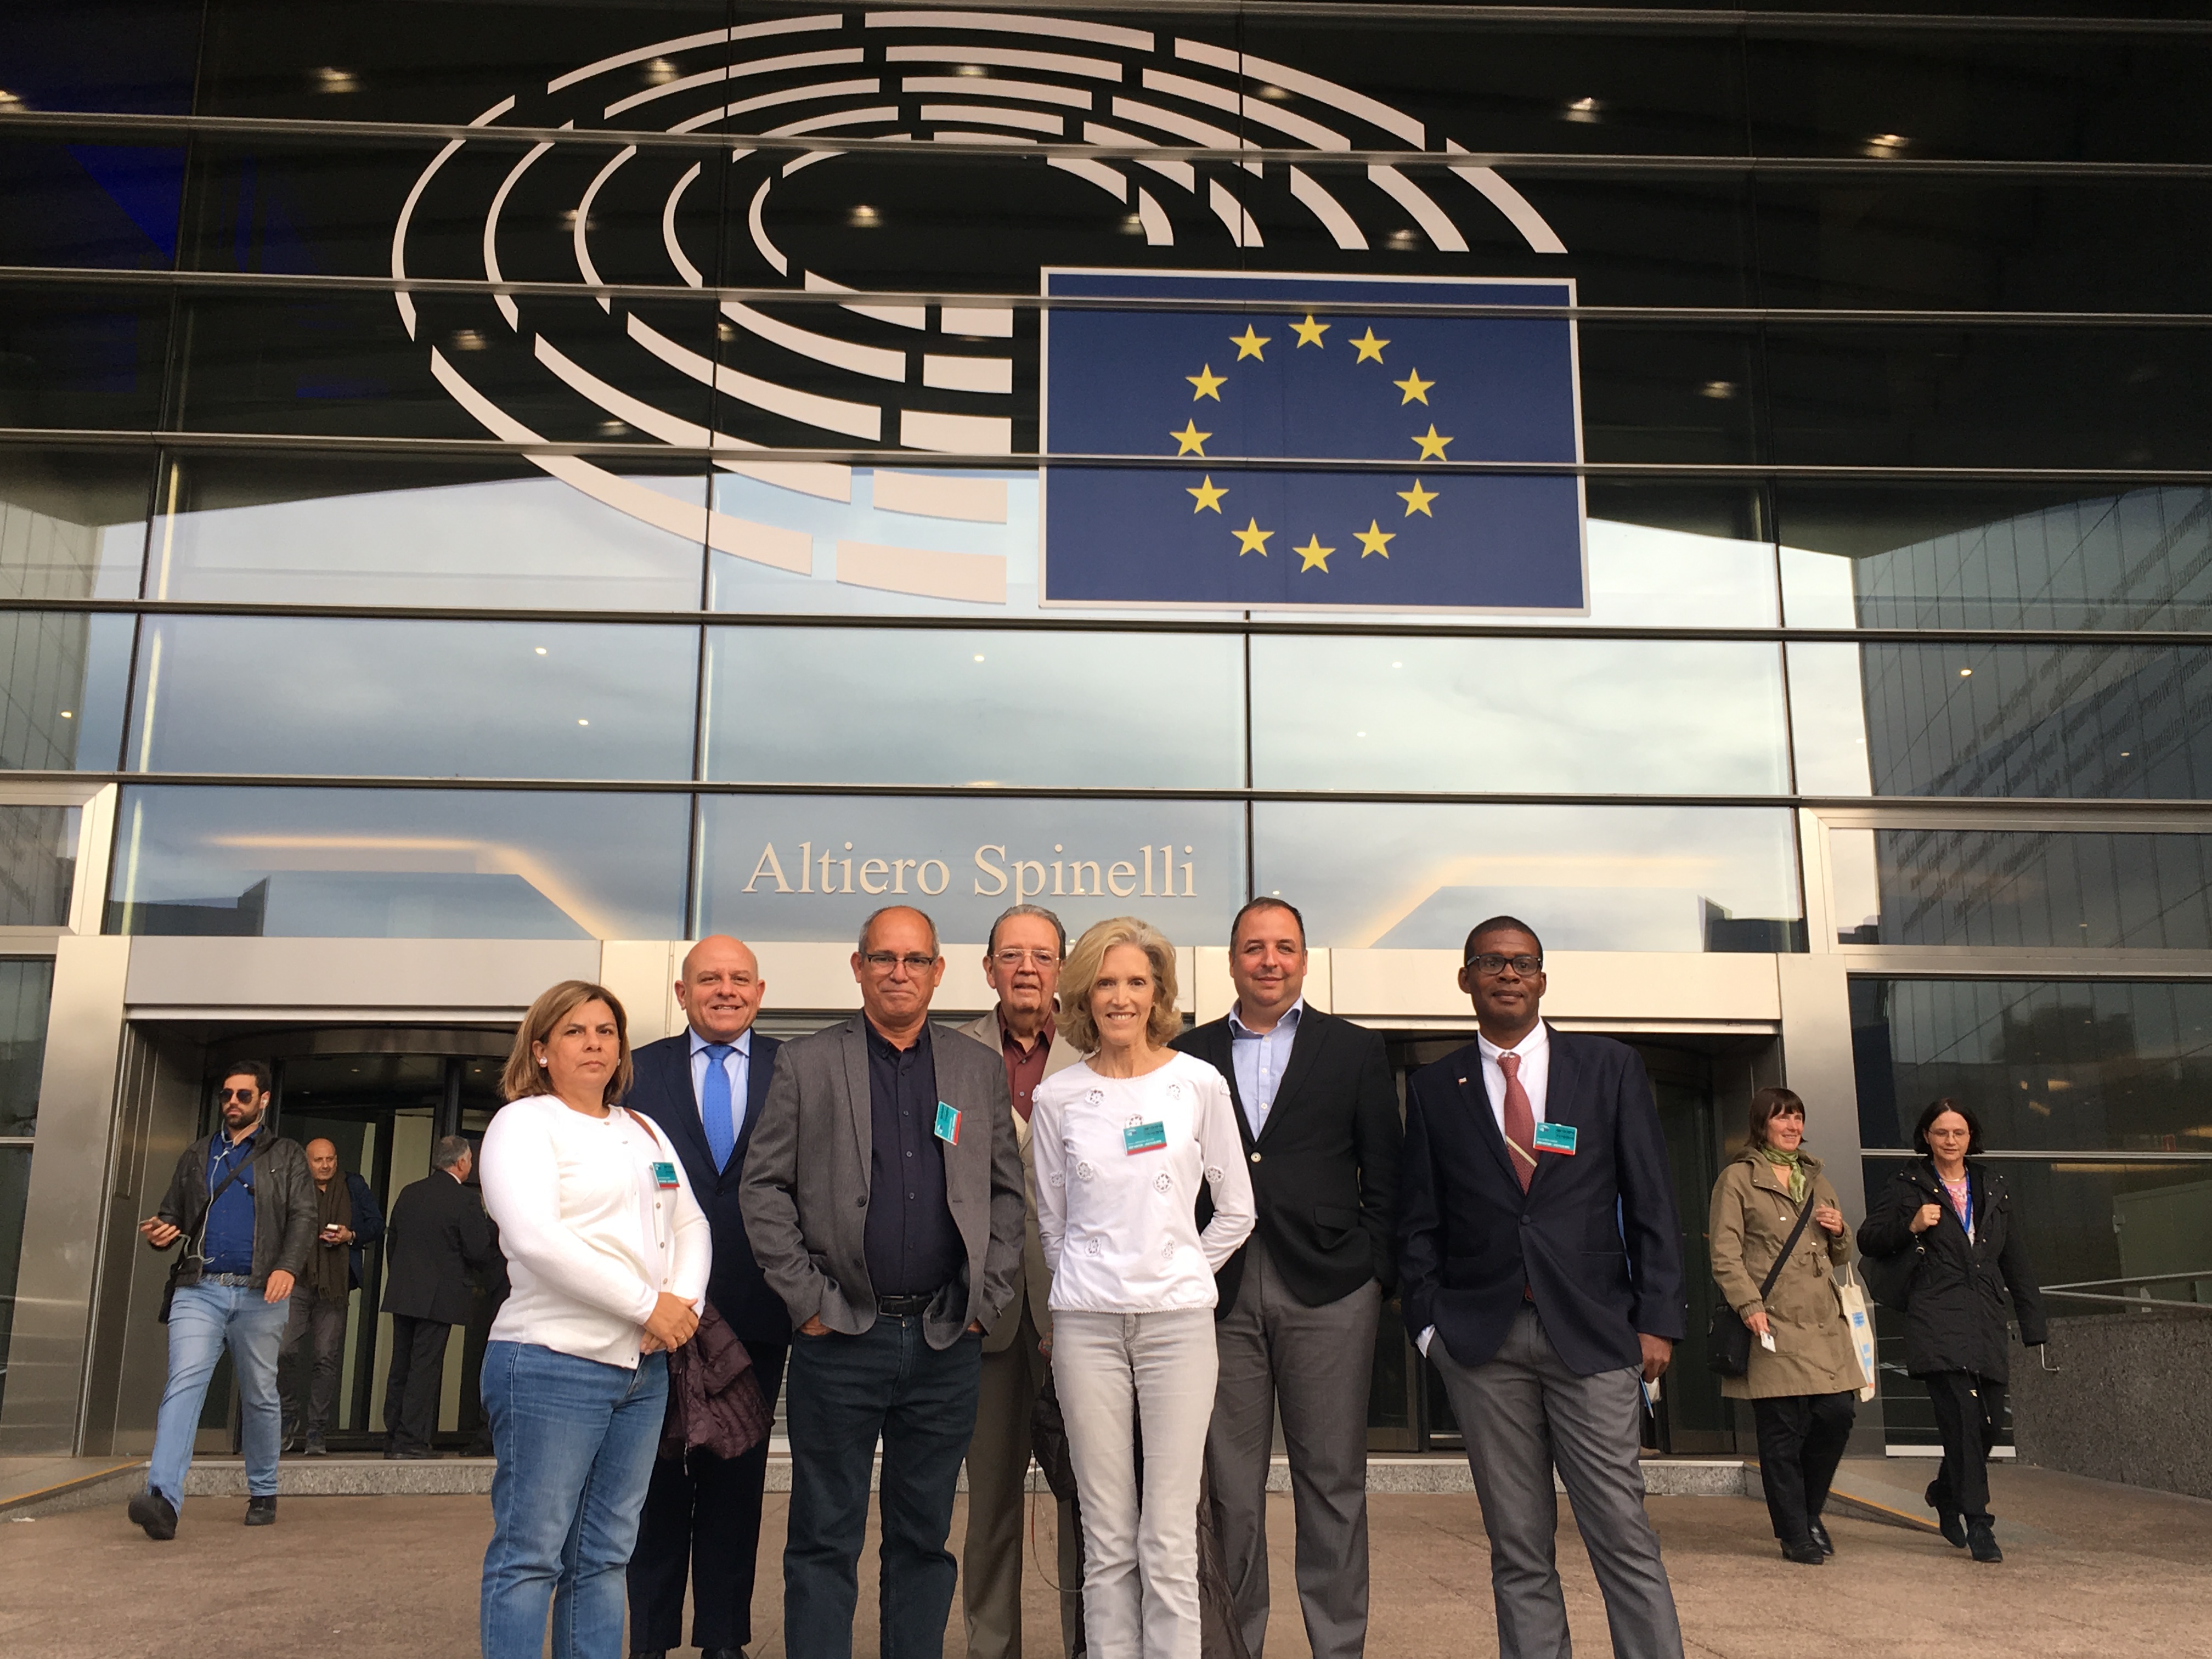 Los peticionarios patrocinados por el OCDH ante el Parlamento Europeo, Bruselas (10/8/2018)